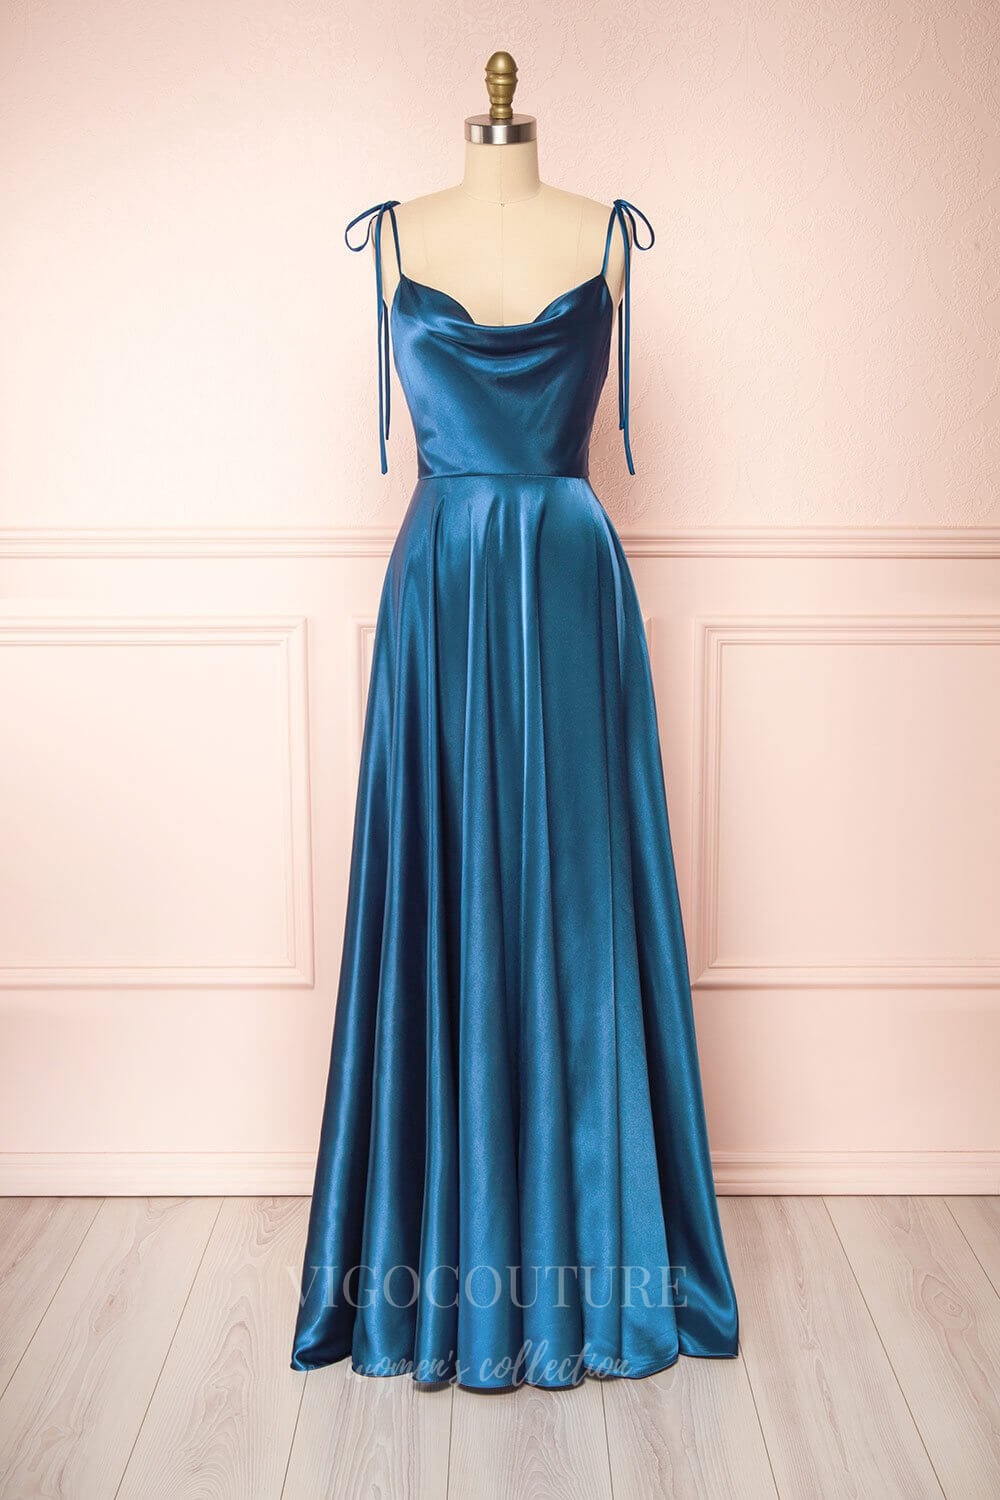 vigocouture-Silver Spaghetti Strap Prom Dress 20574-Prom Dresses-vigocouture-Blue-US2-